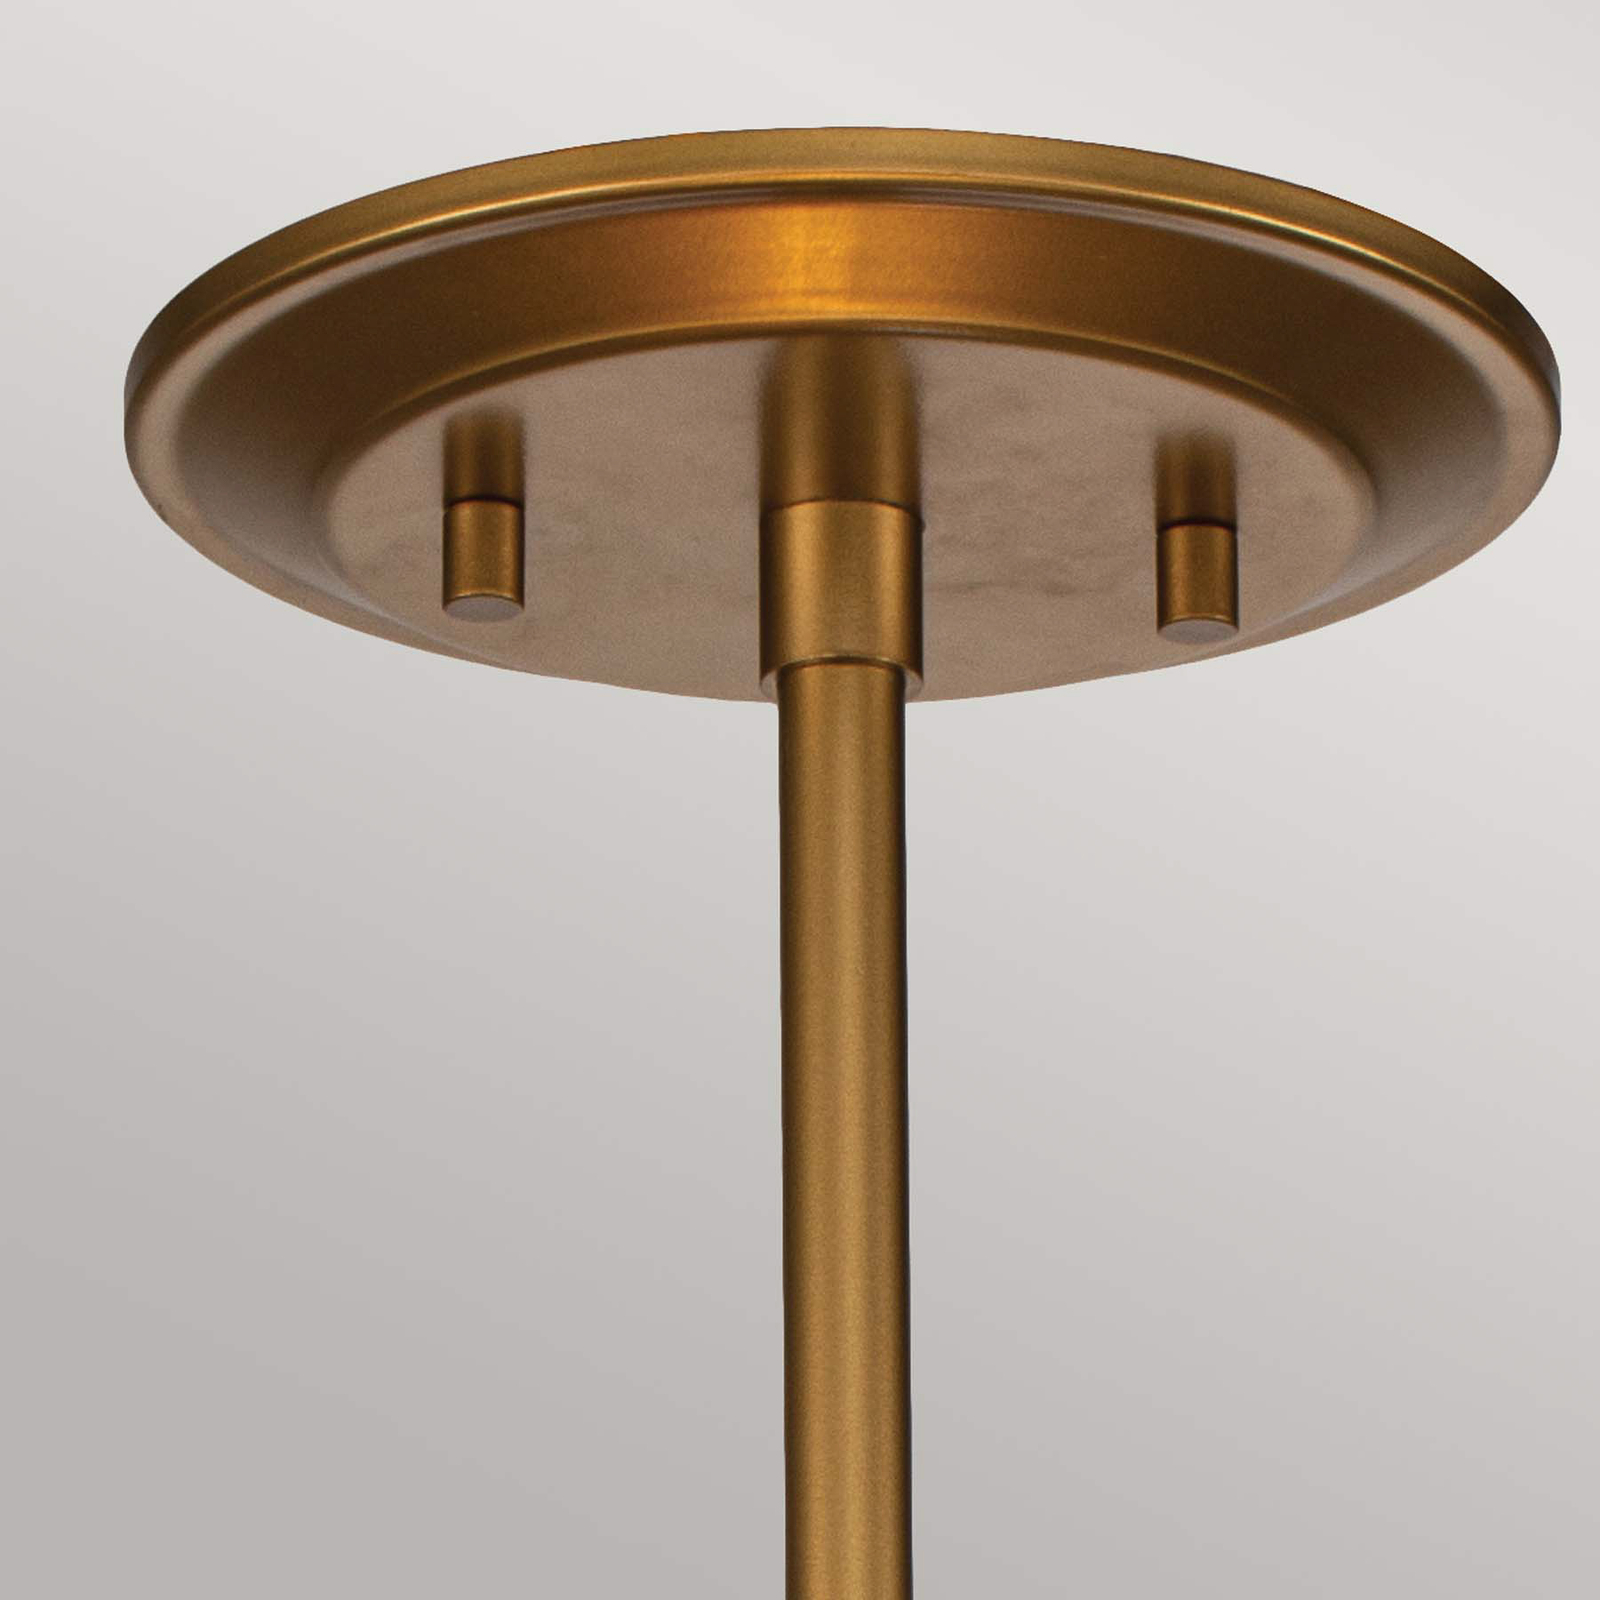 Ziggy Small pendant light Ø 25.4 cm, gold